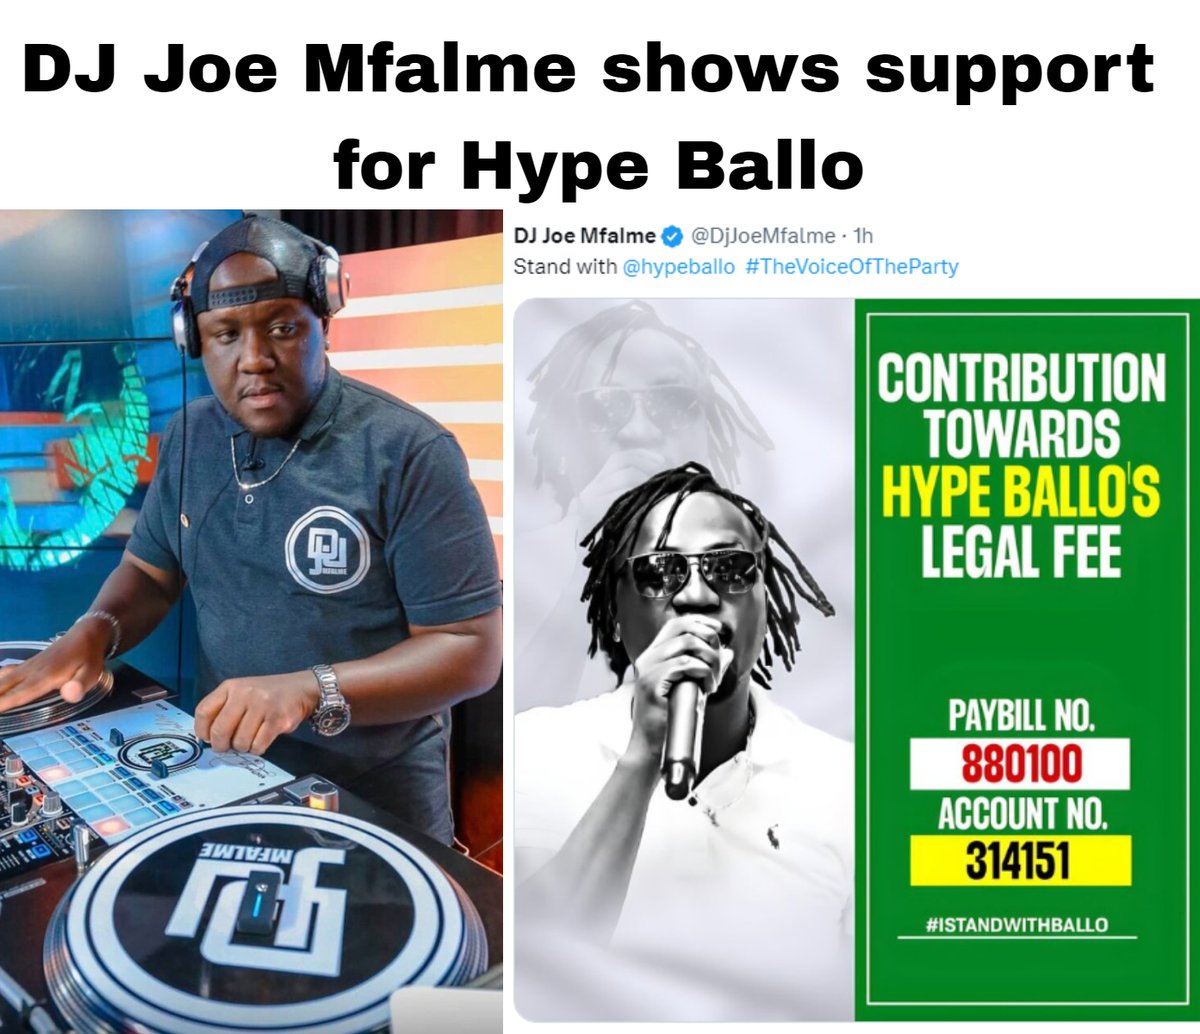 DJ Joe Mfalme shows support for Hype Ballo